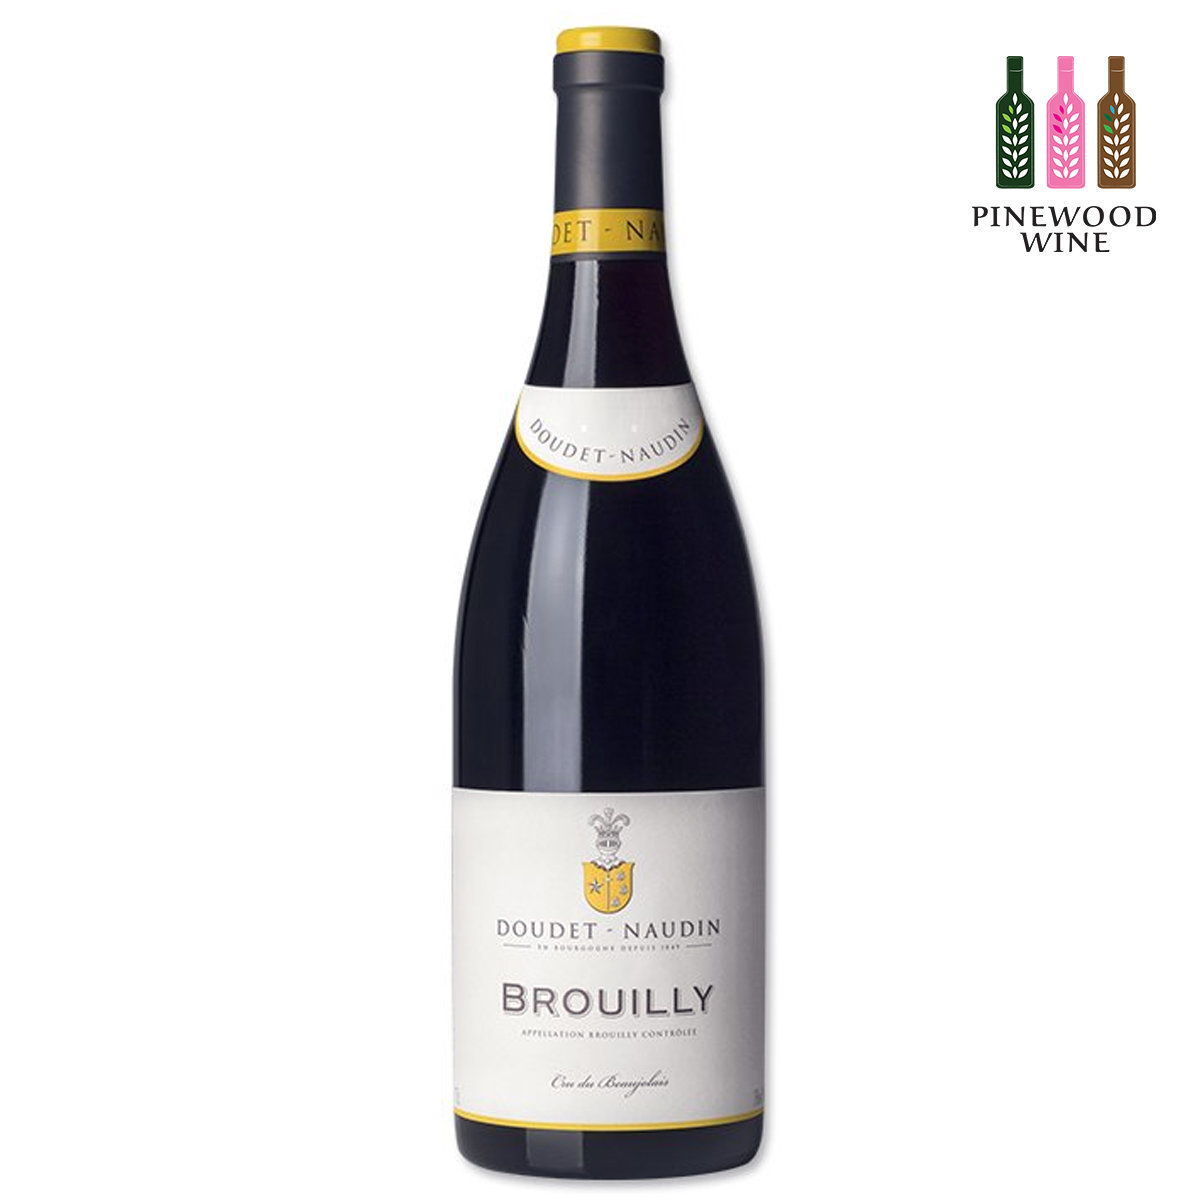 Brouilly 2019 Beaujolais, Burgundy